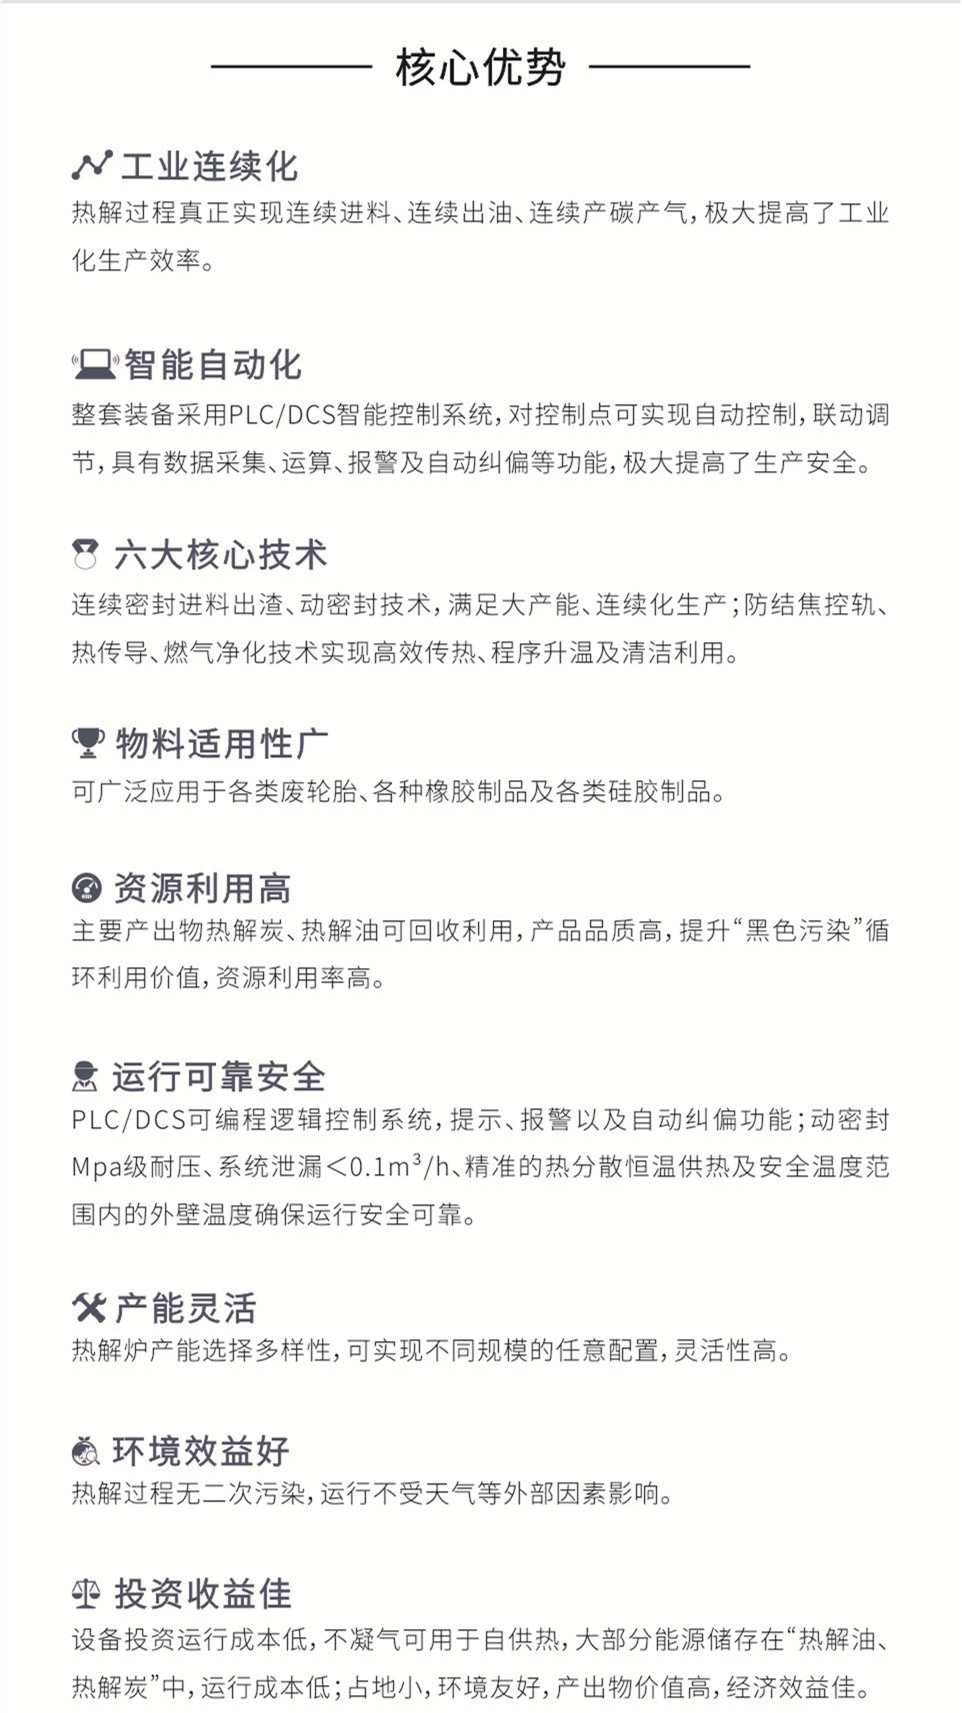 永利集团(中国游)官方网站